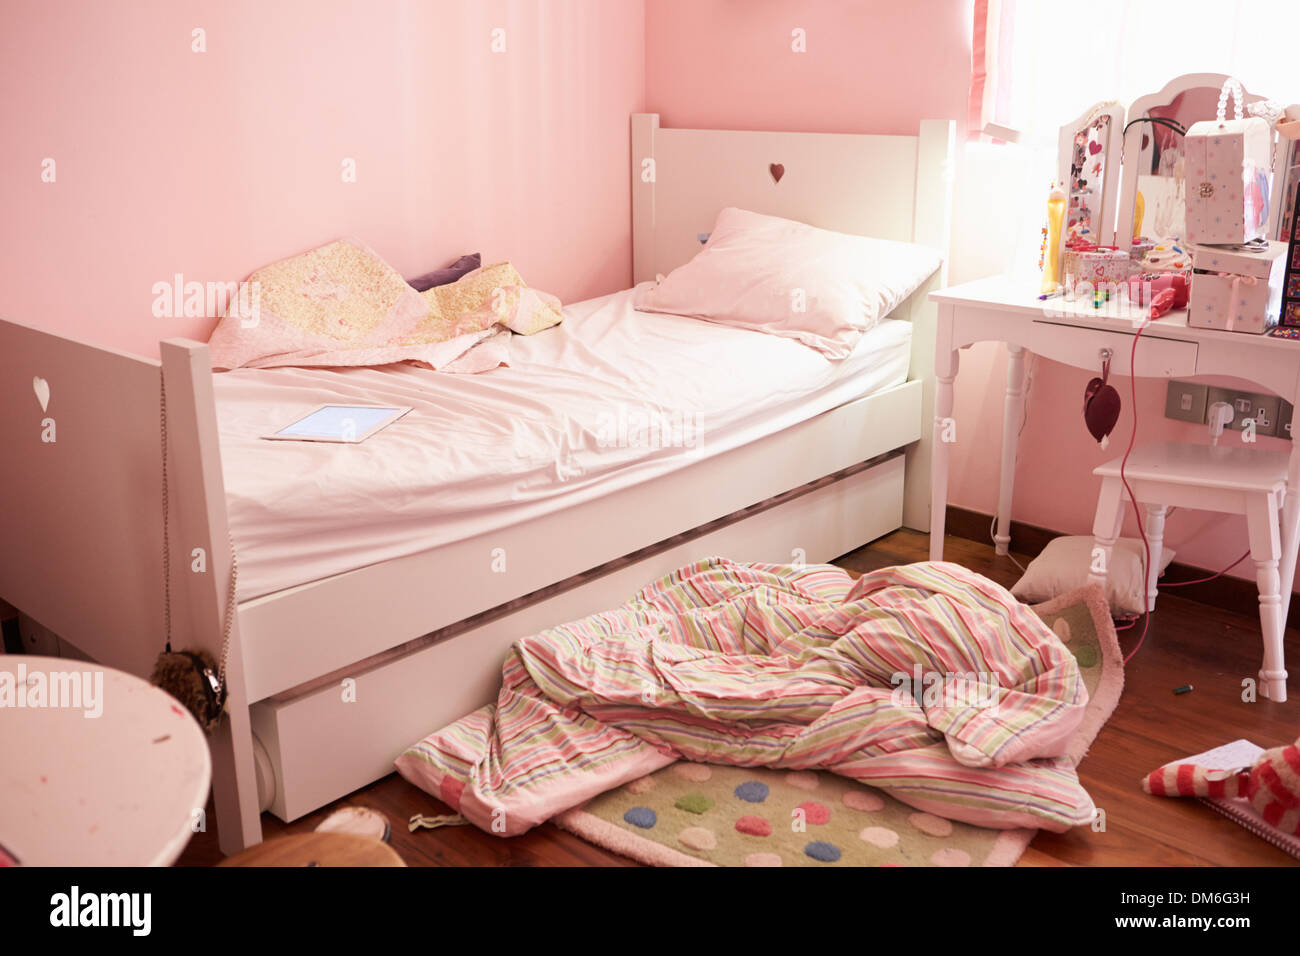 Vacío y desordenado dormitorio infantil Foto de stock